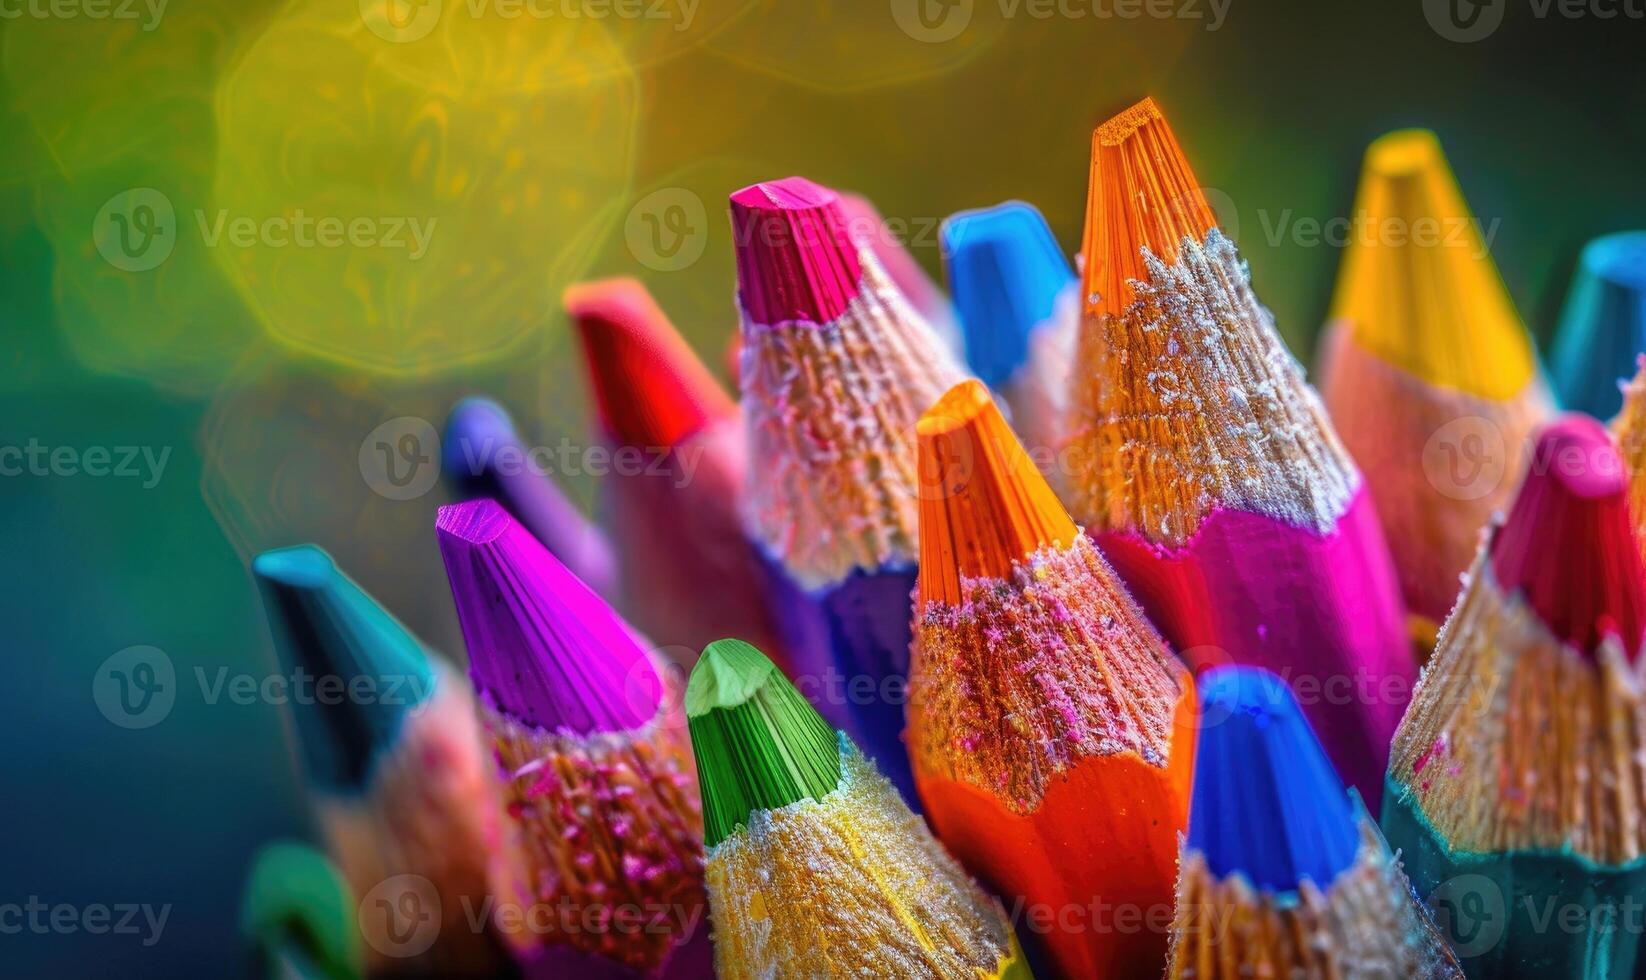 detailopname van een bundel van gekleurde potloden, abstract achtergrond met gekleurde potloden macro visie foto